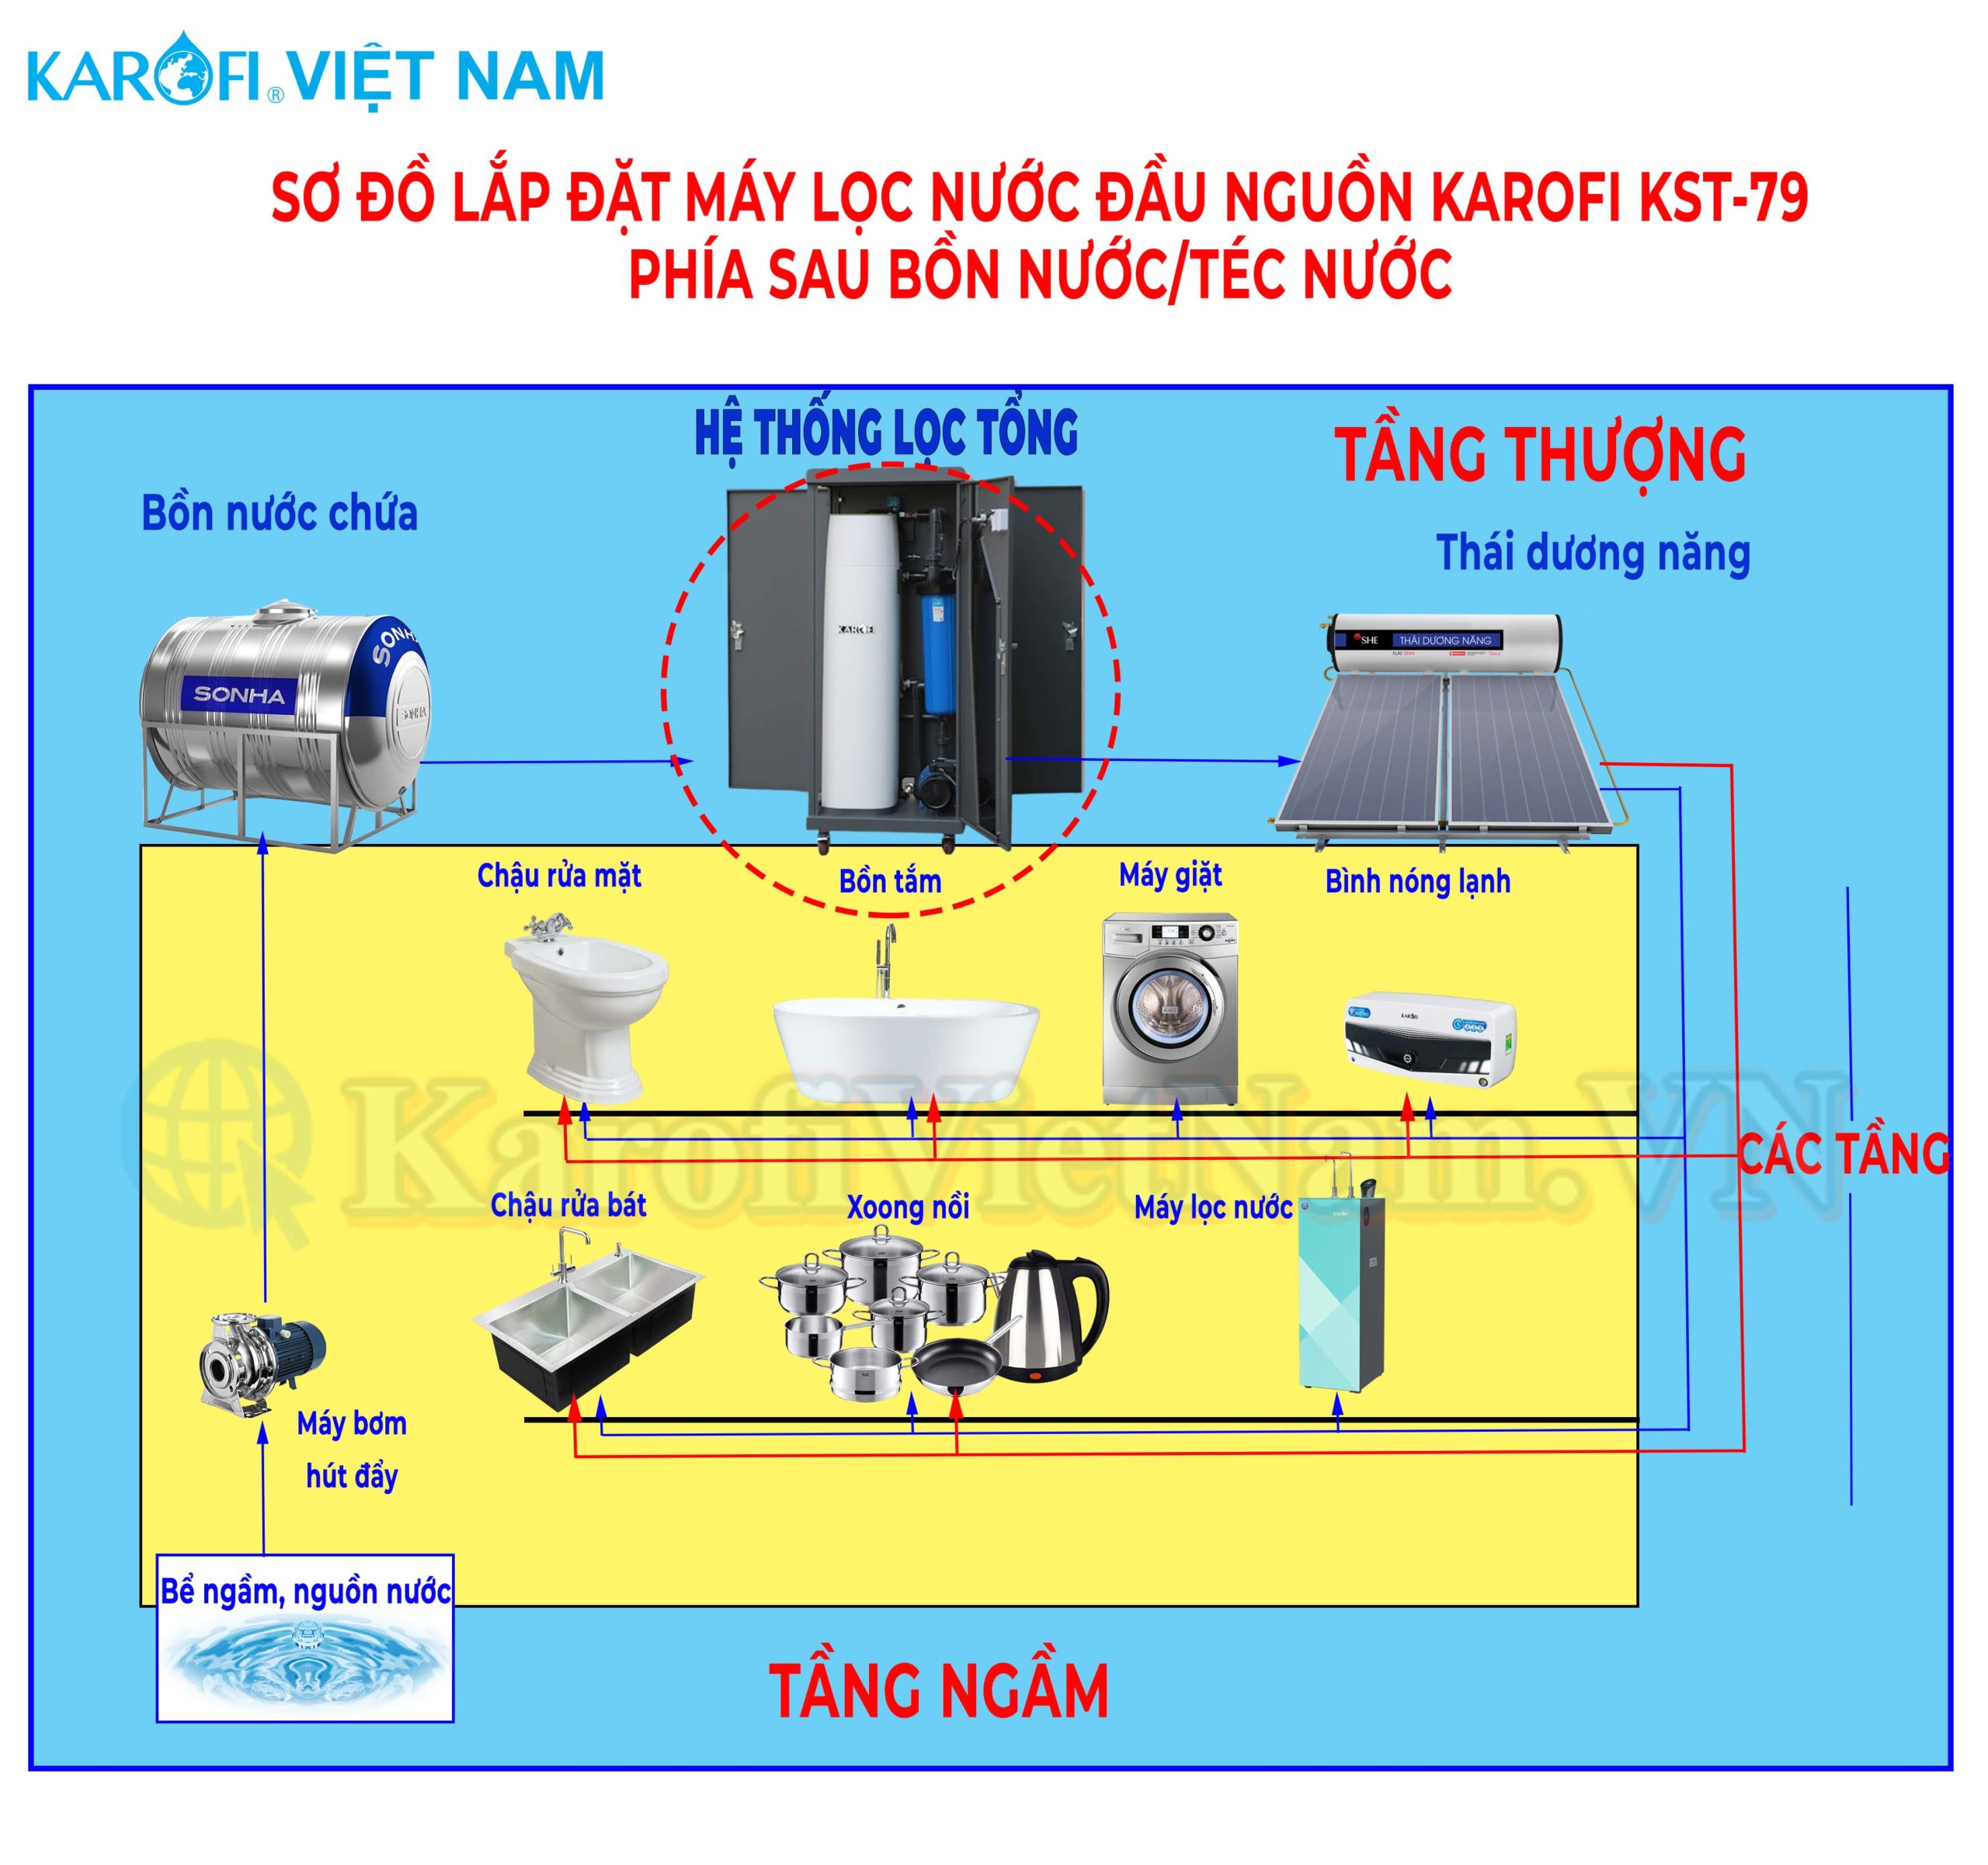 Sơ đồ lắp đặt hệ thống lọc đầu nguồn Karofi KMF-68 sau bồn nước